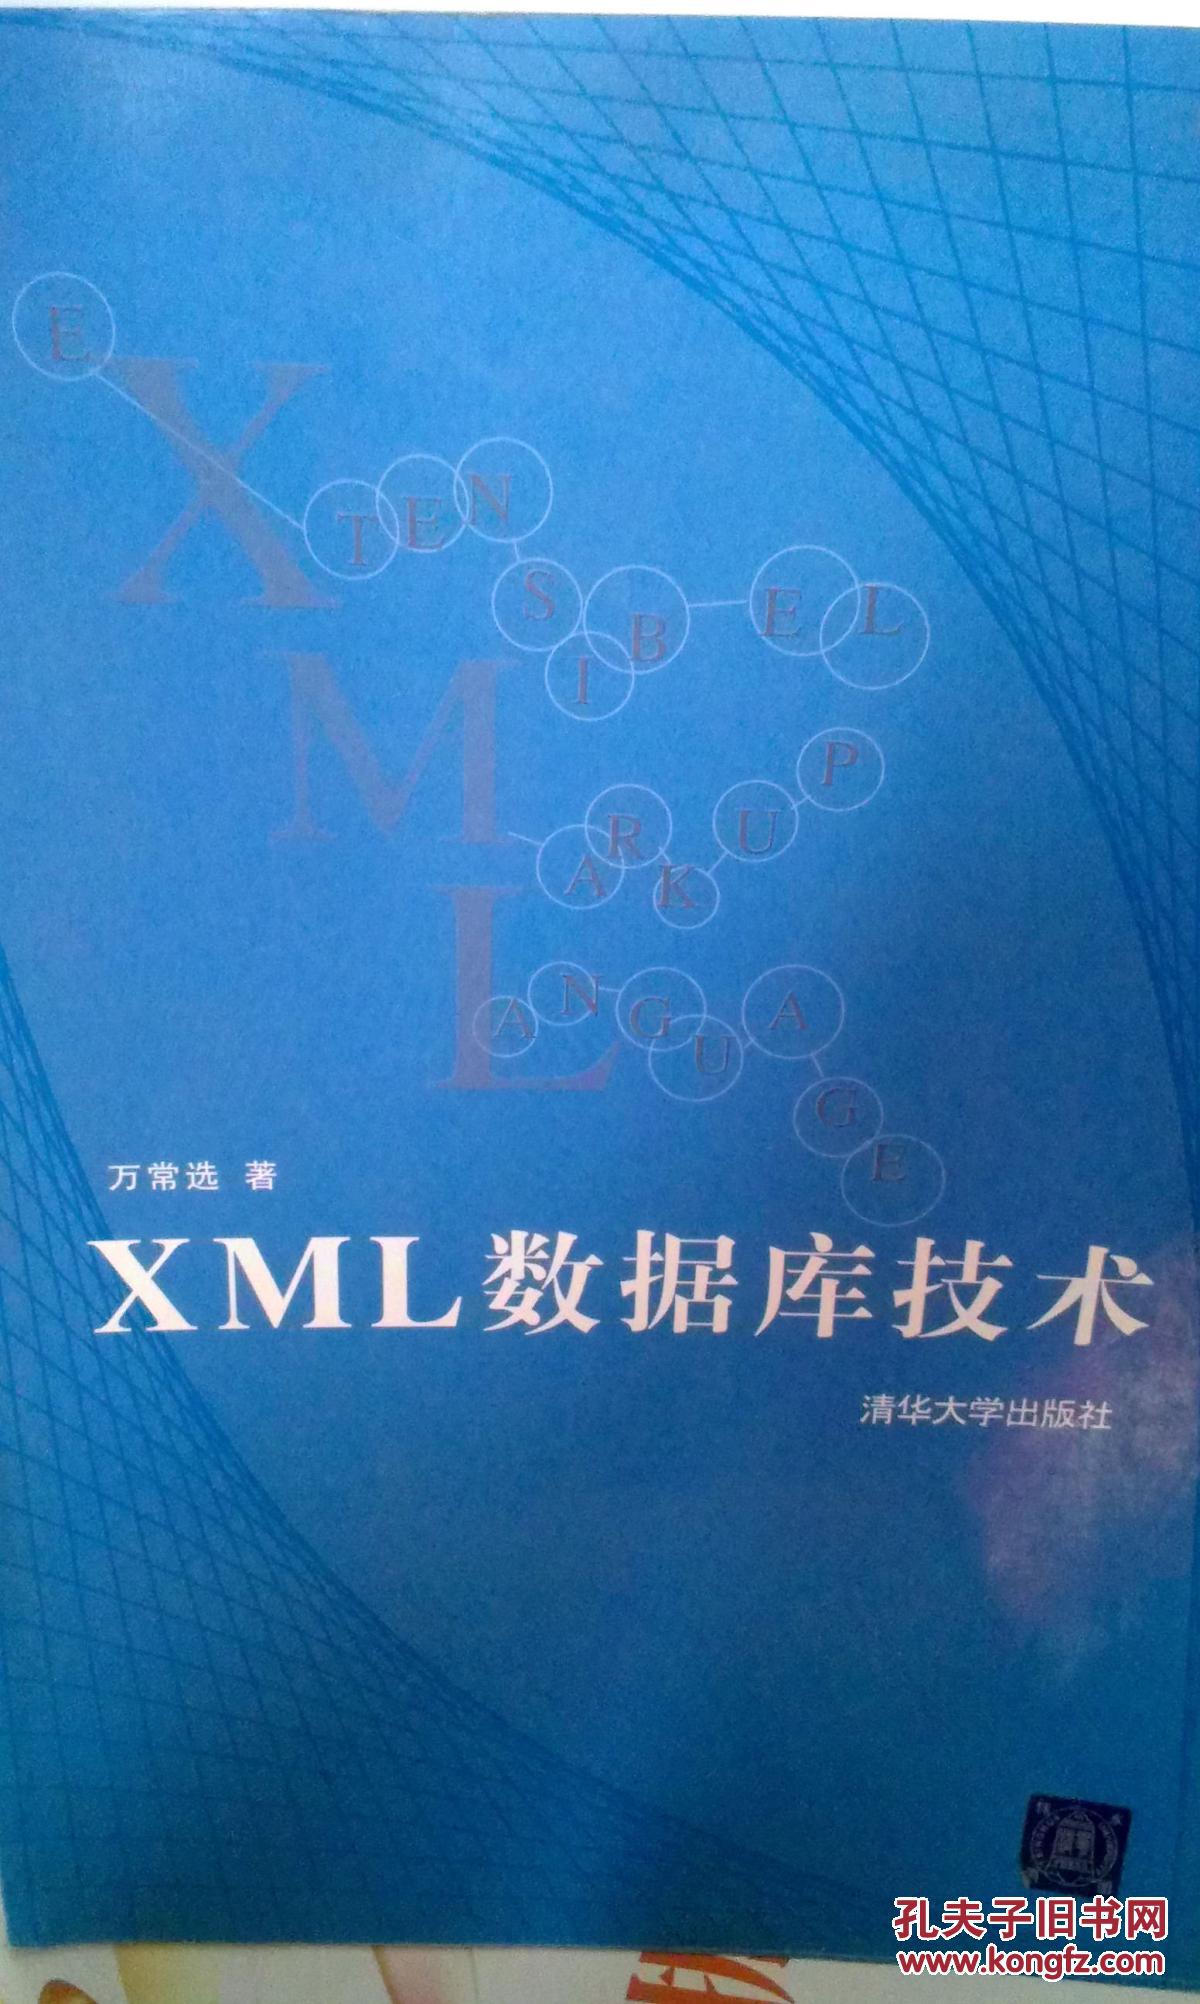 【图】【包邮】XML数据库技术_价格:20.00_网